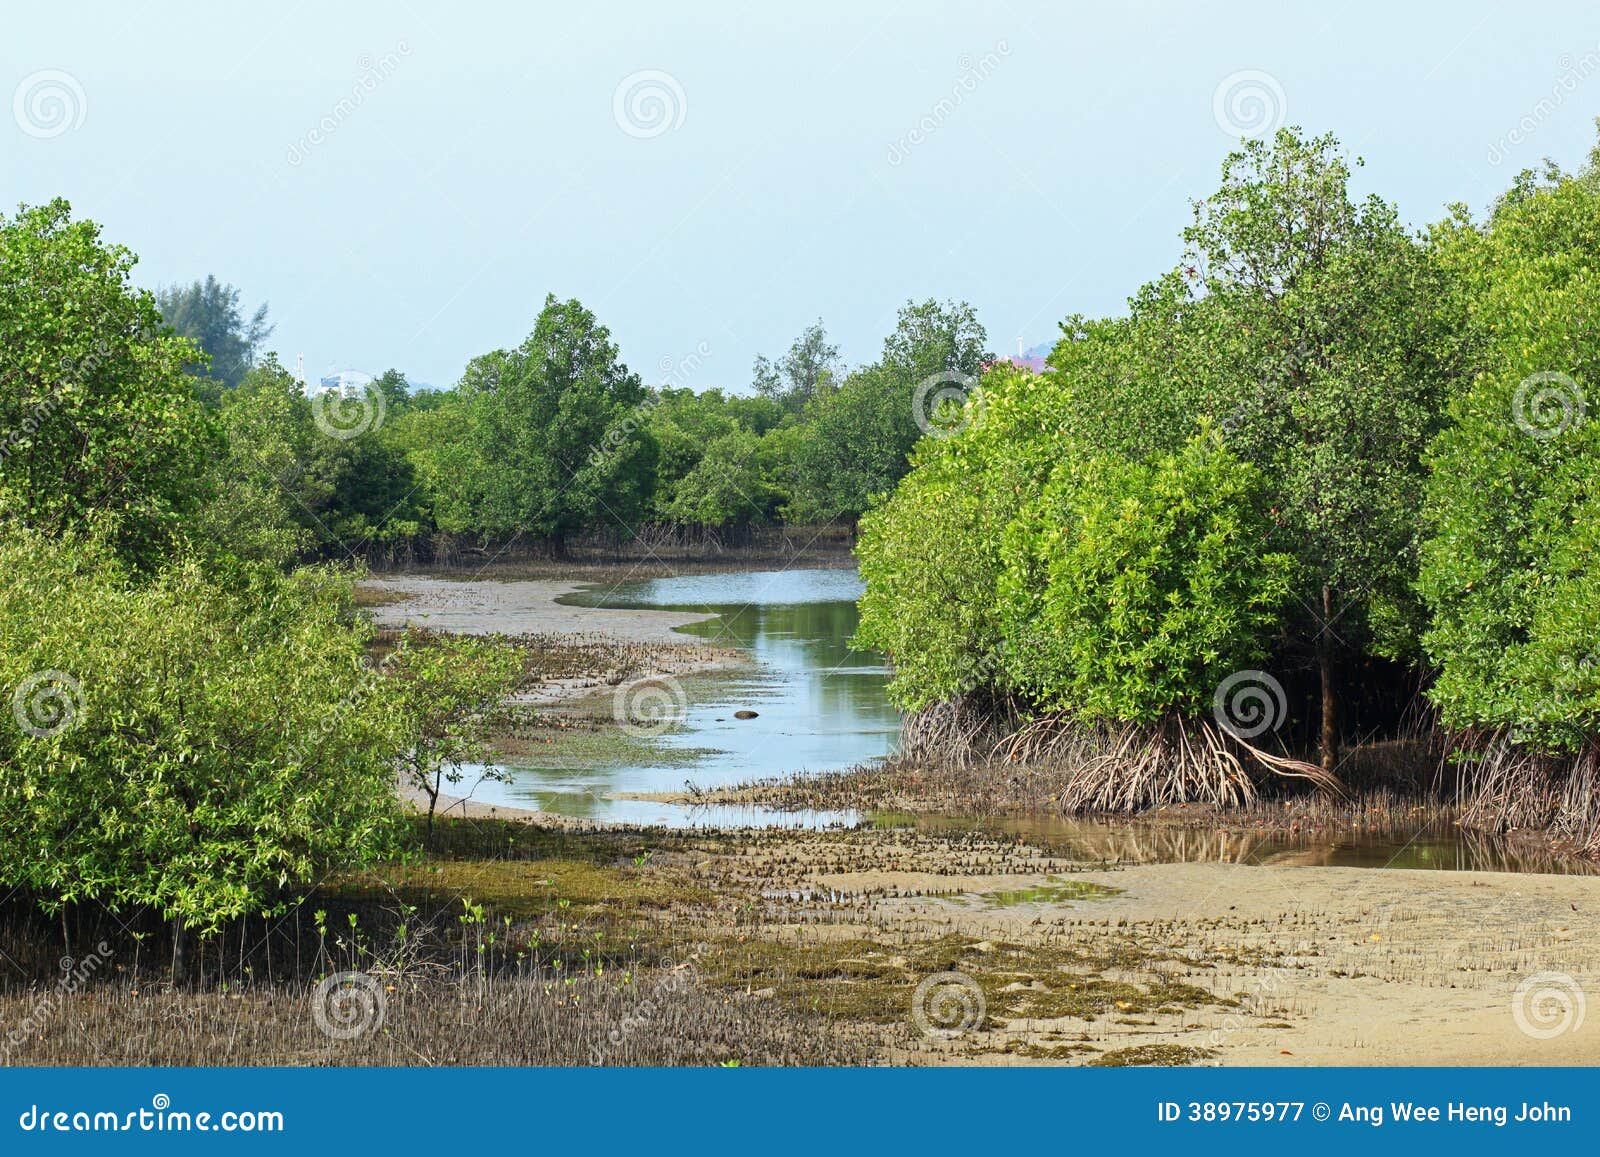 rhizophora mangrove mudflats